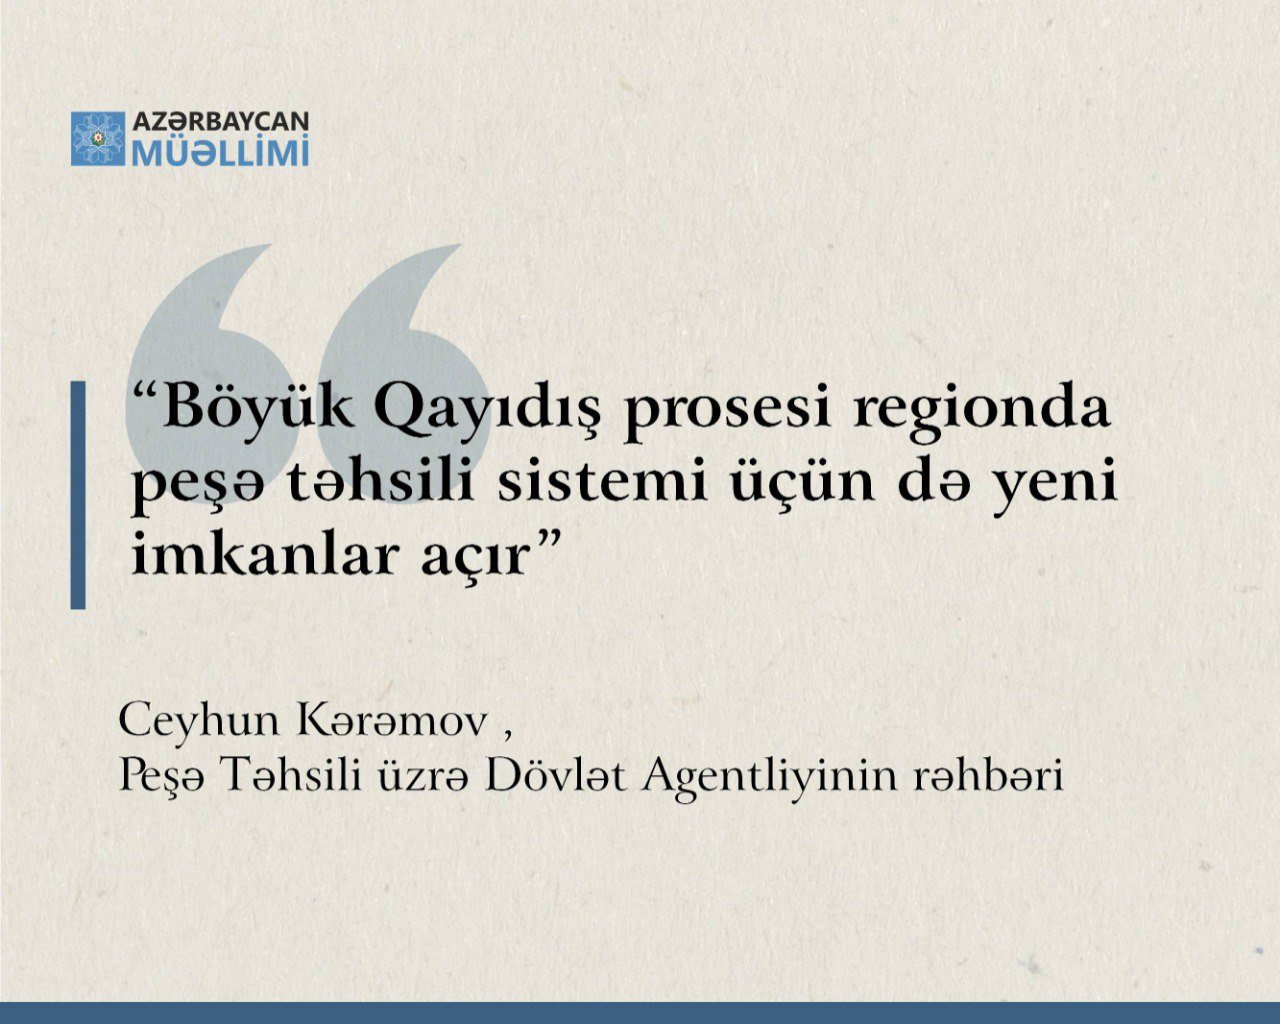 Ceyhun Kərəmov:”Böyük Qayıdış prosesi regionda peşə təhsili sistemi üçün də yeni imkanlar açır”